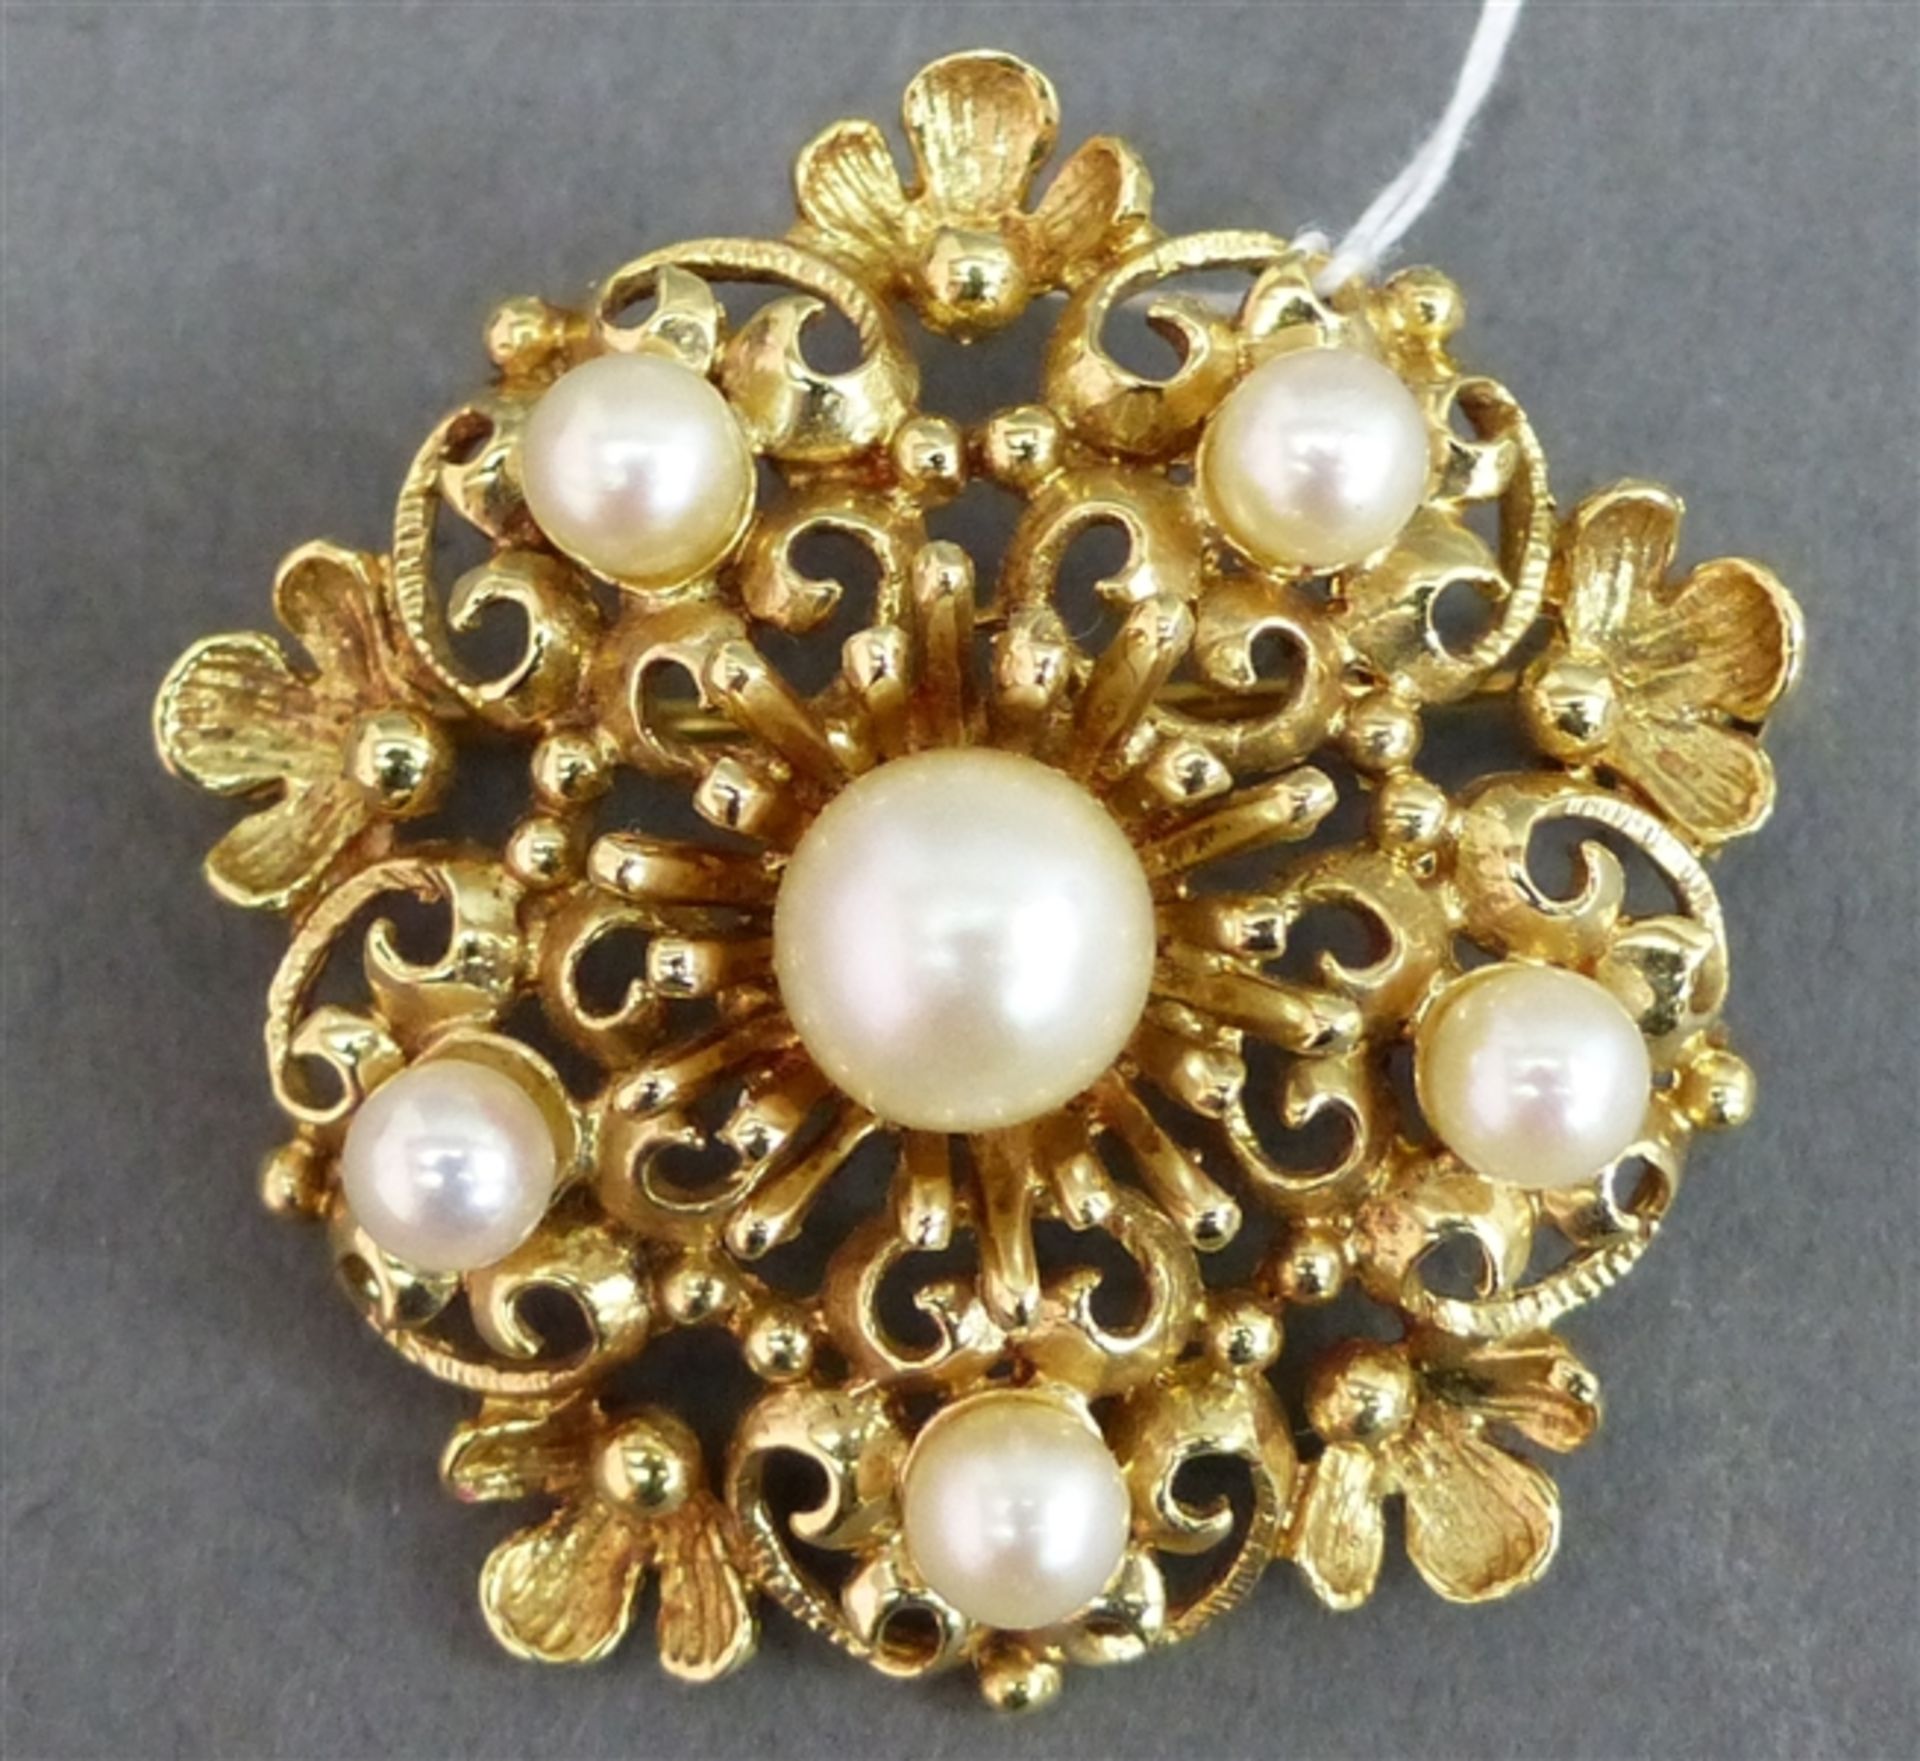 Brosche 14 kt. Gelbgold, besetzt mit 6 Perlen, durchbrochen gearbeitet, ca. 8 g schwer, d 3 cm,